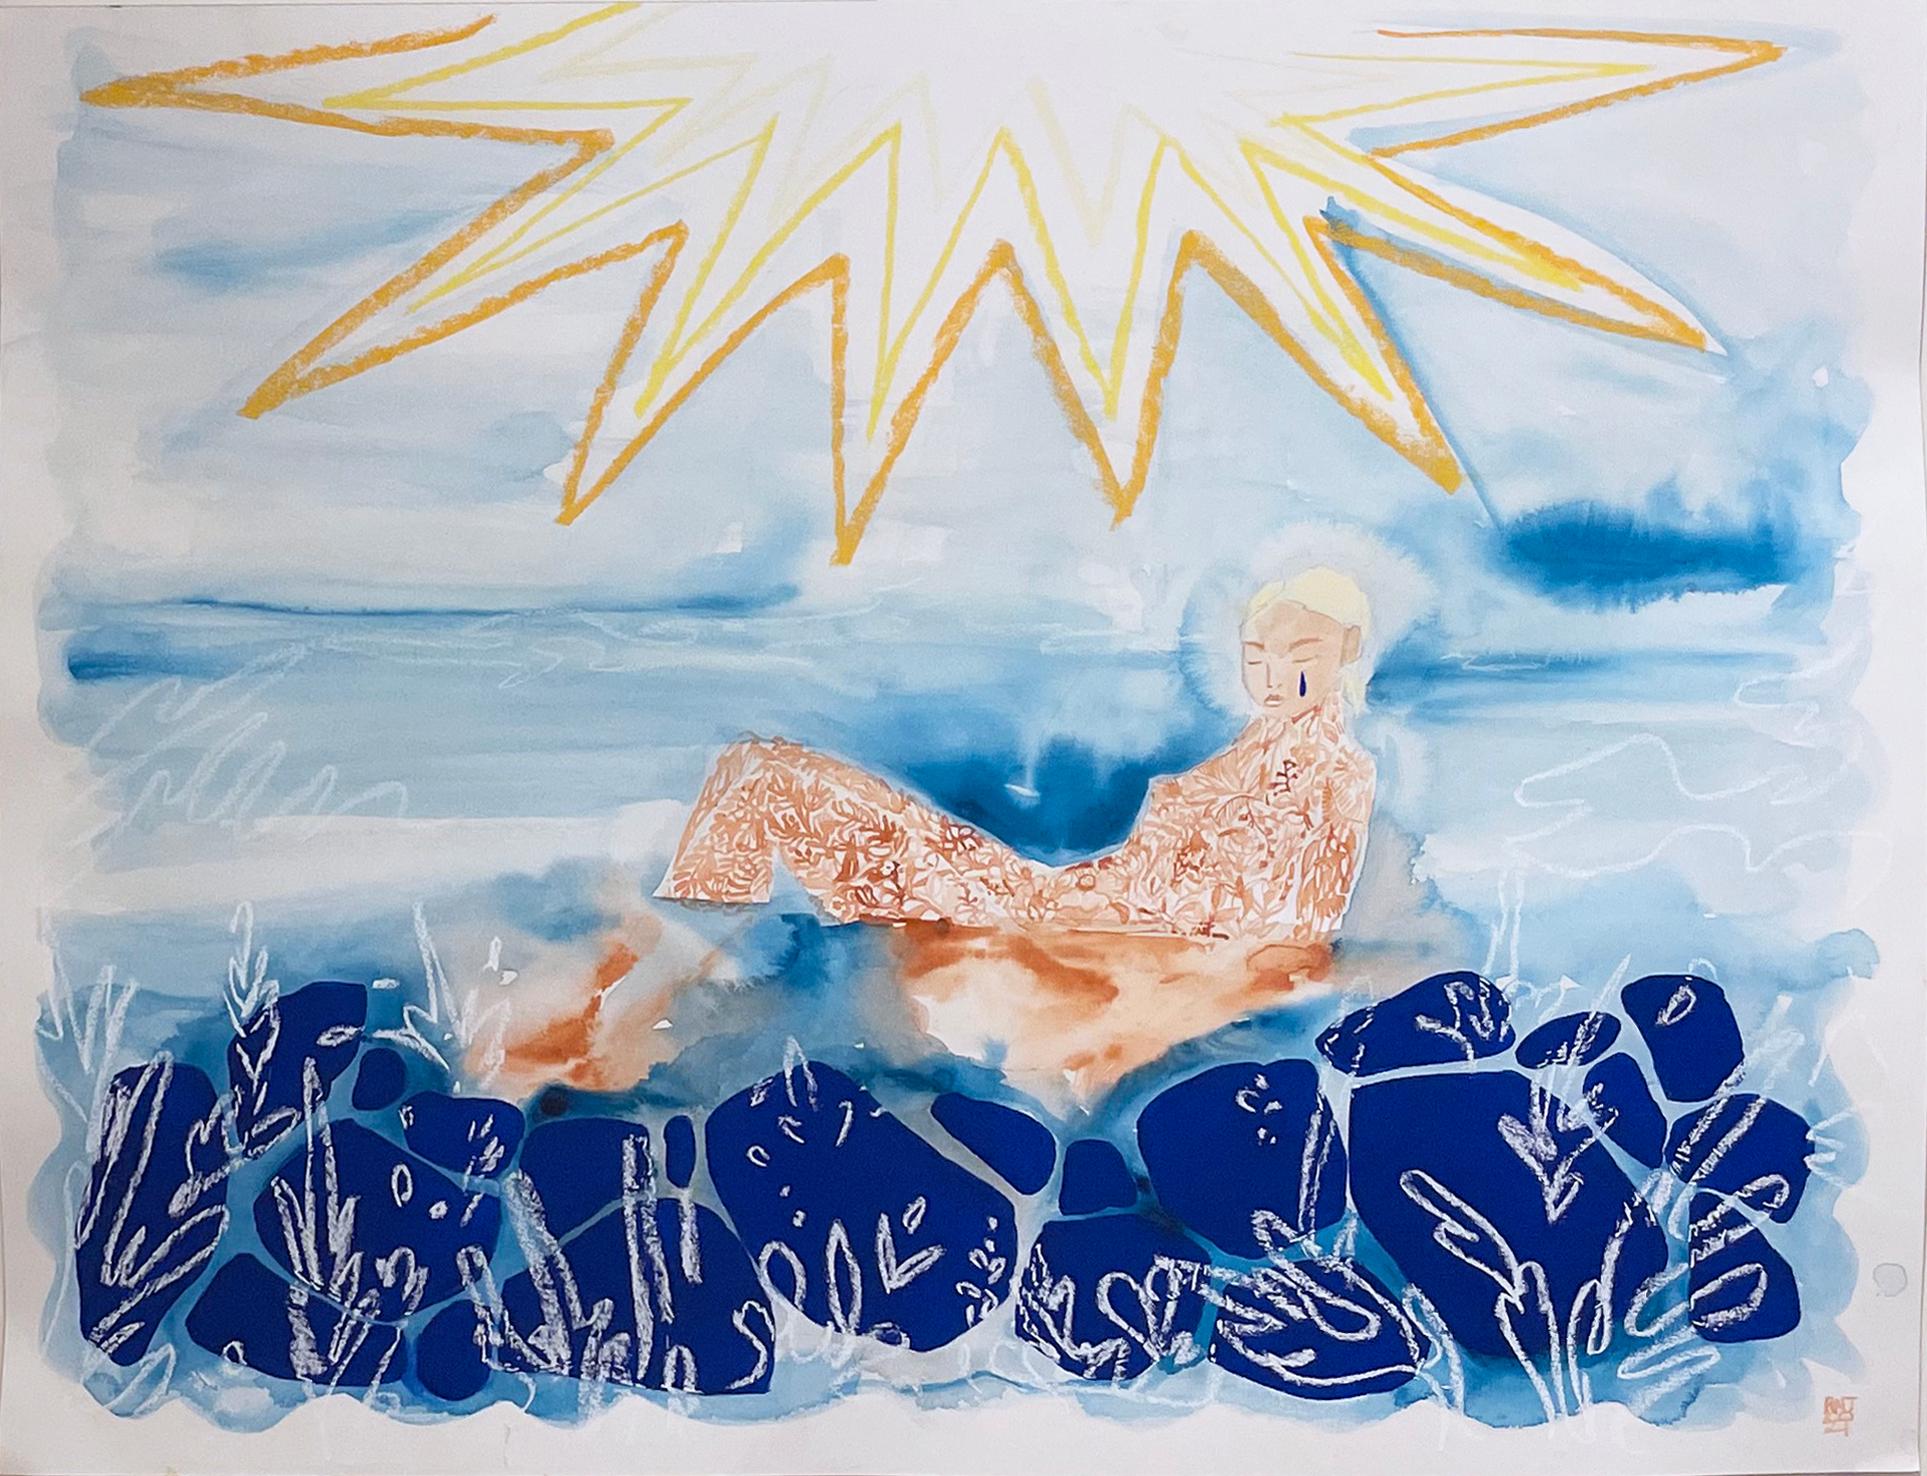 Sunbath, 2021, Meereslandschaft, weibliche Figur, Schwimmer, Meer, Sonne, Blau, Gelb, Gold (Grau), Landscape Painting, von Rebecca Johnson